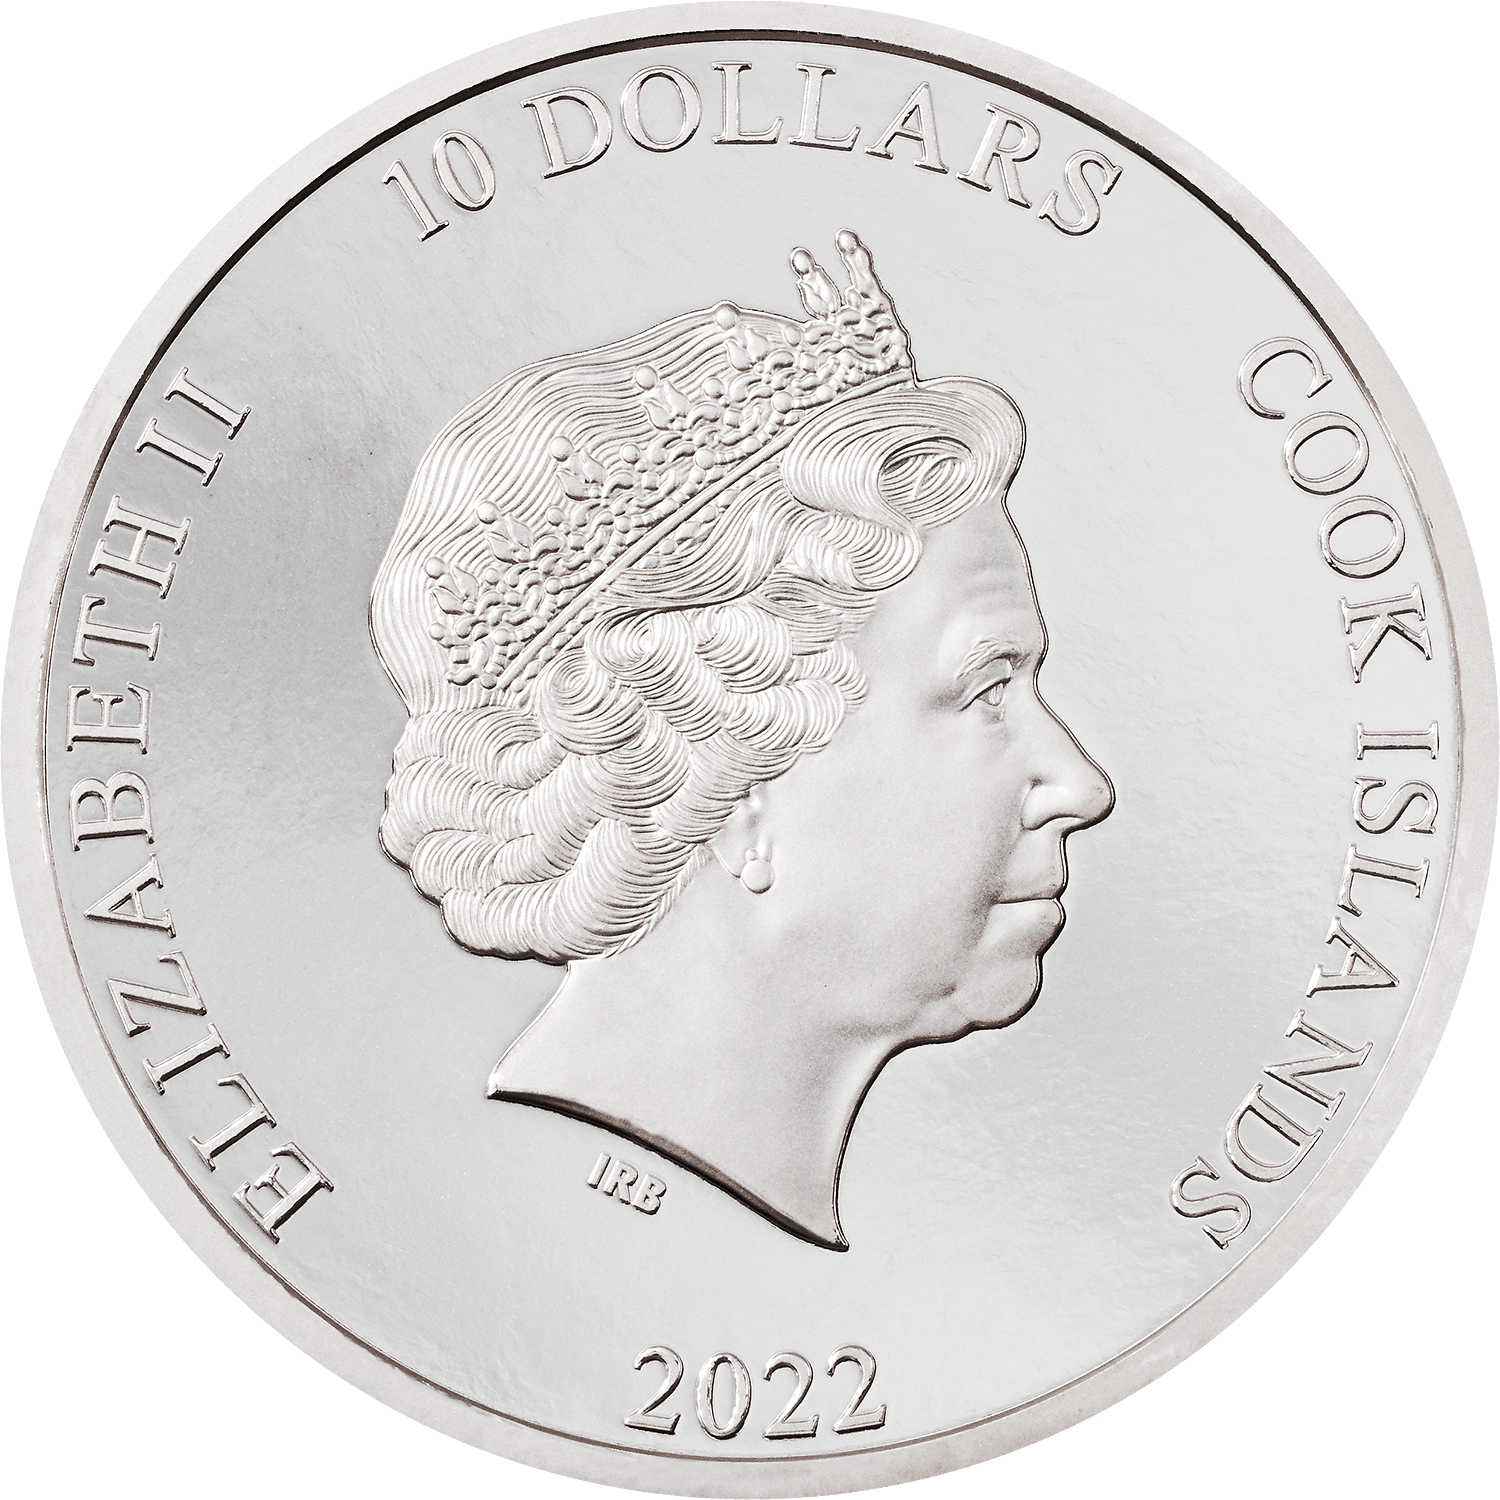 ROCK 2 Oz Silver Coin $10 Cook Islands 2022 - PARTHAVA COIN